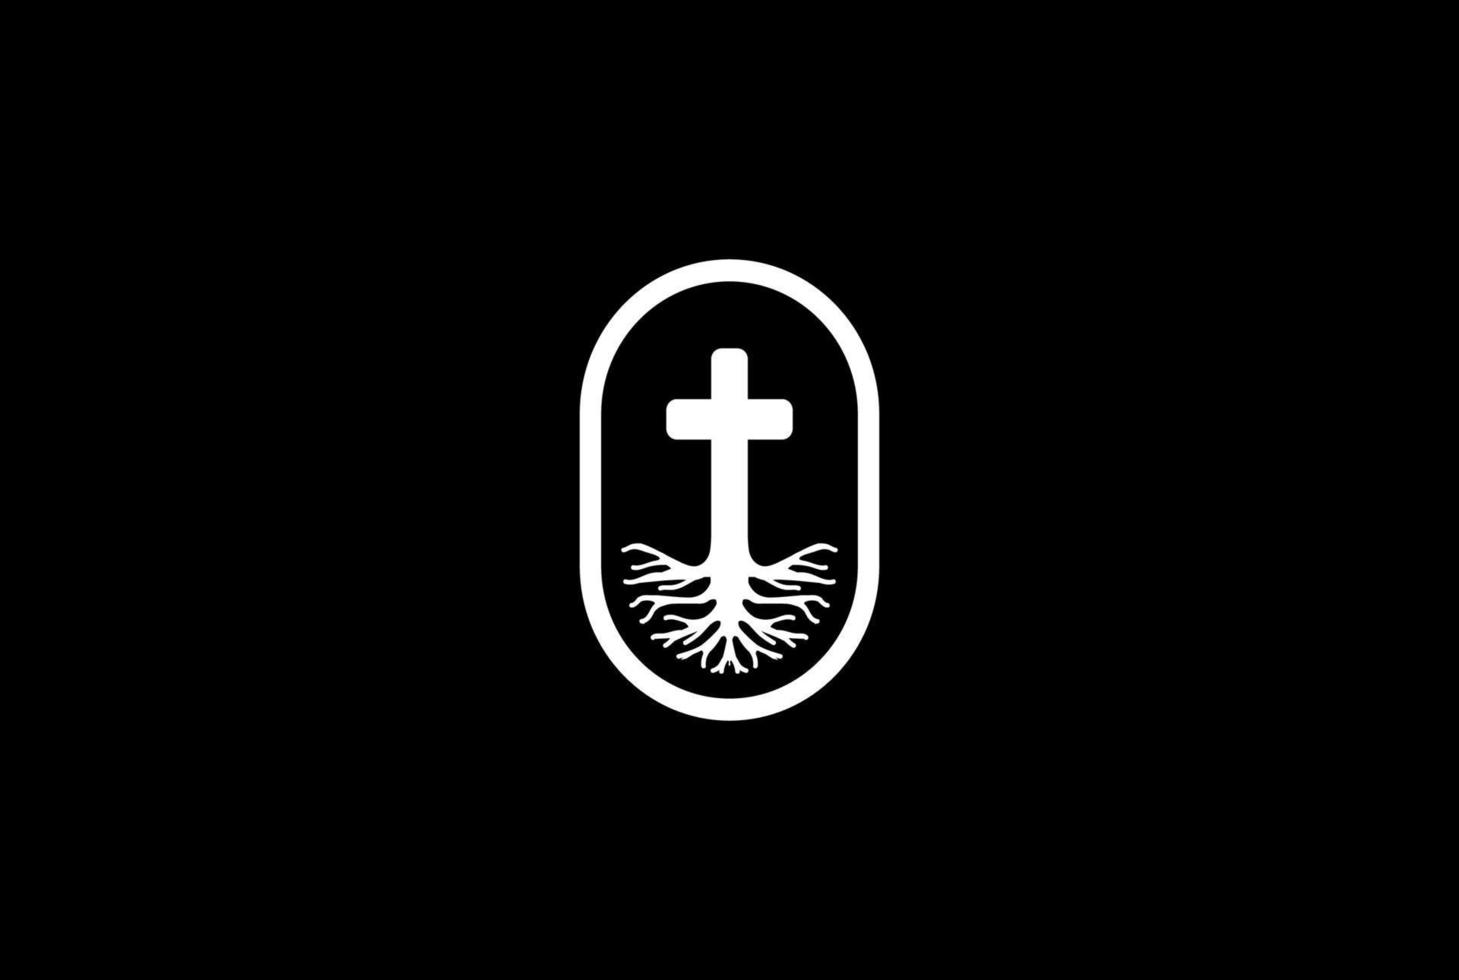 leven wortel christelijk jezus kruis kerk kapel religie logo ontwerp vector